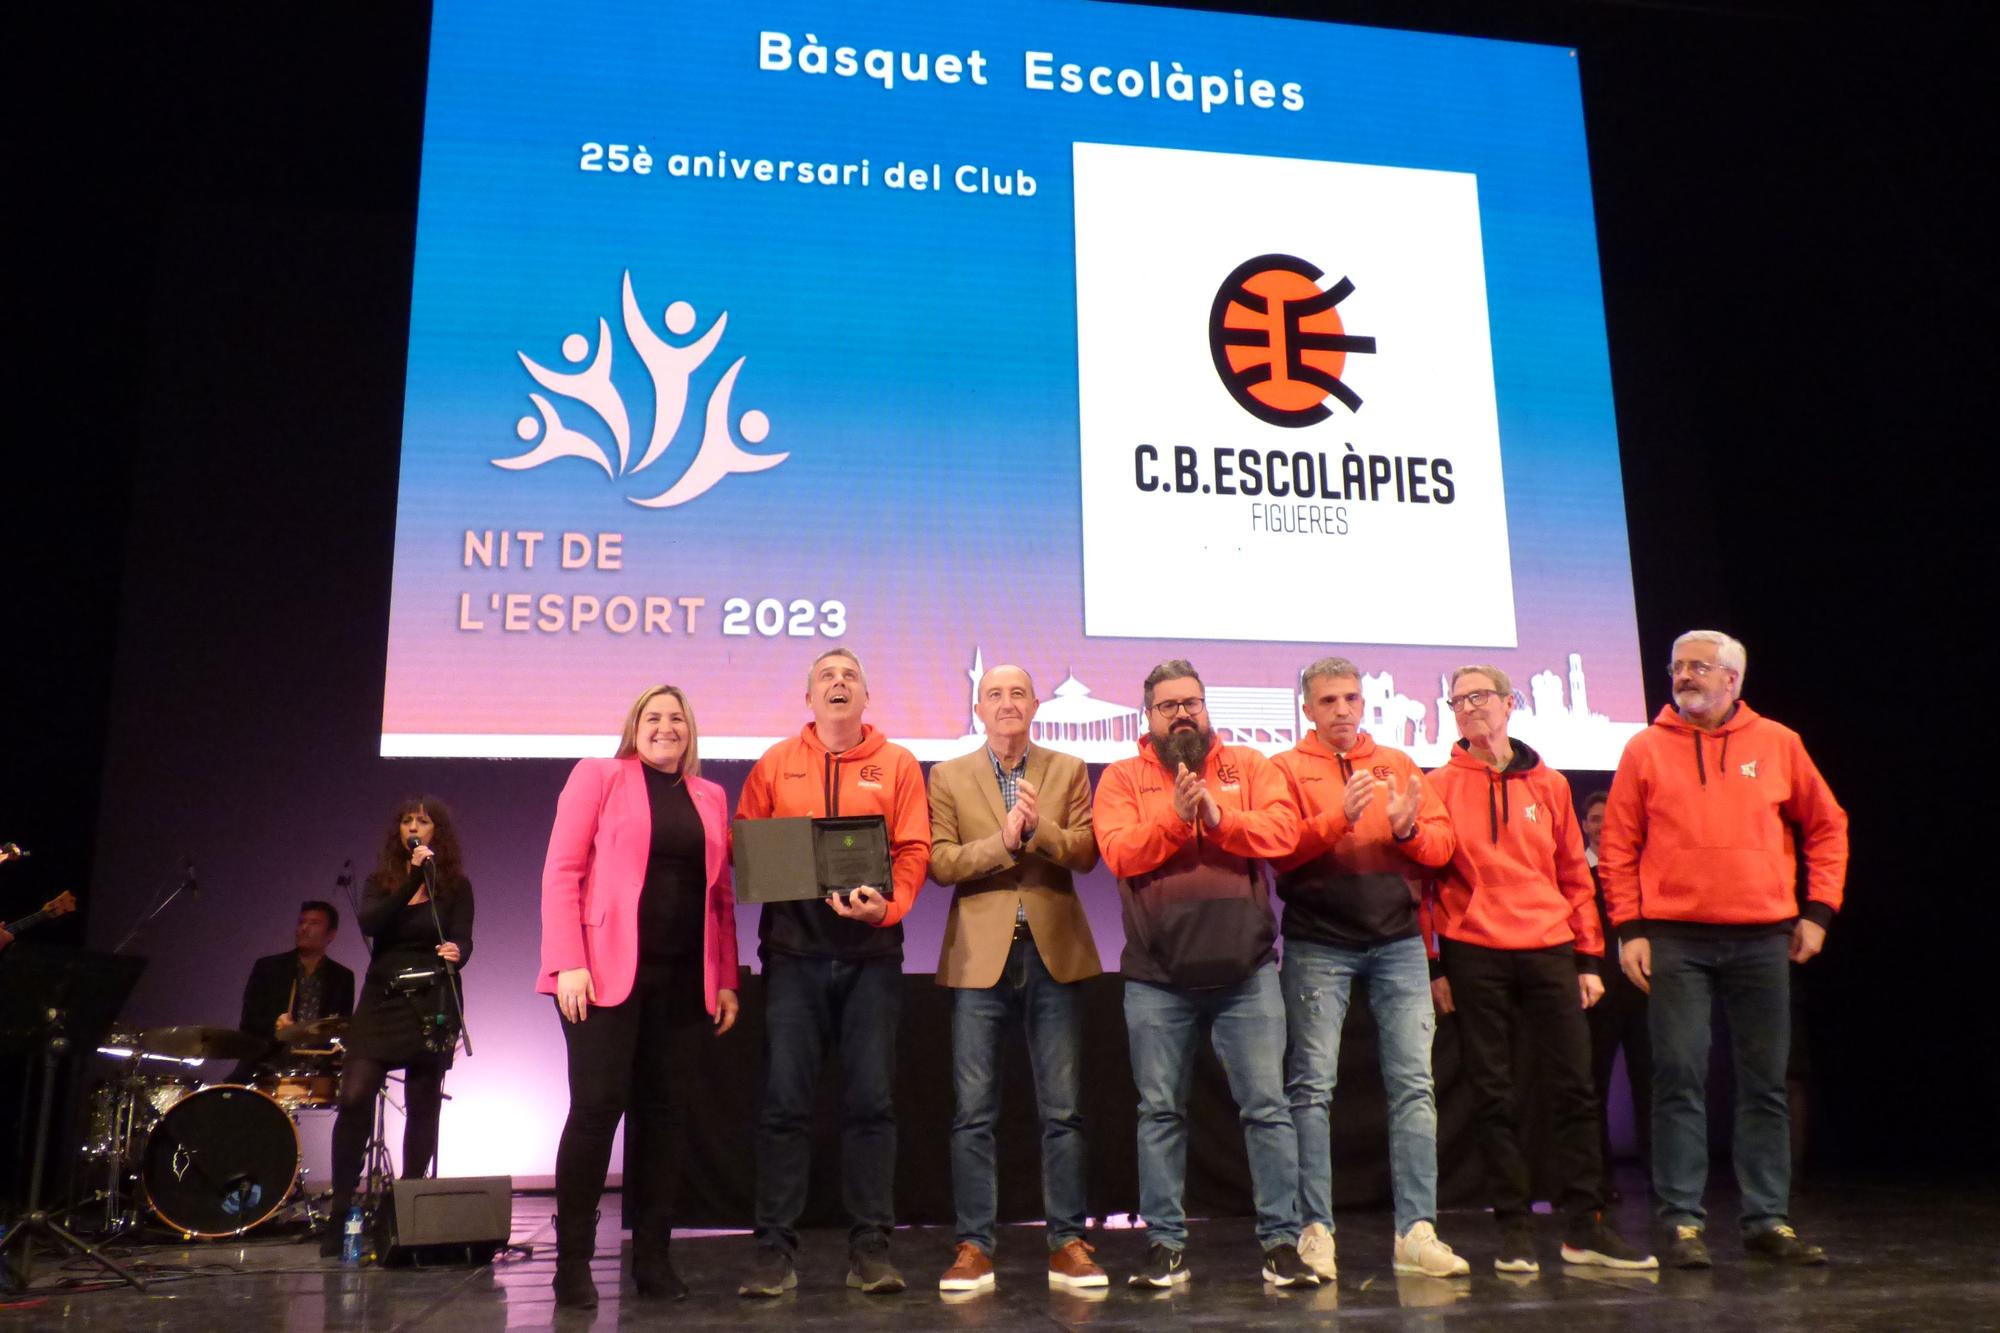 Els esportistes s'apoderen del Teatre El Jardí de Figueres per celebrar la Nit de l'Esport 2023